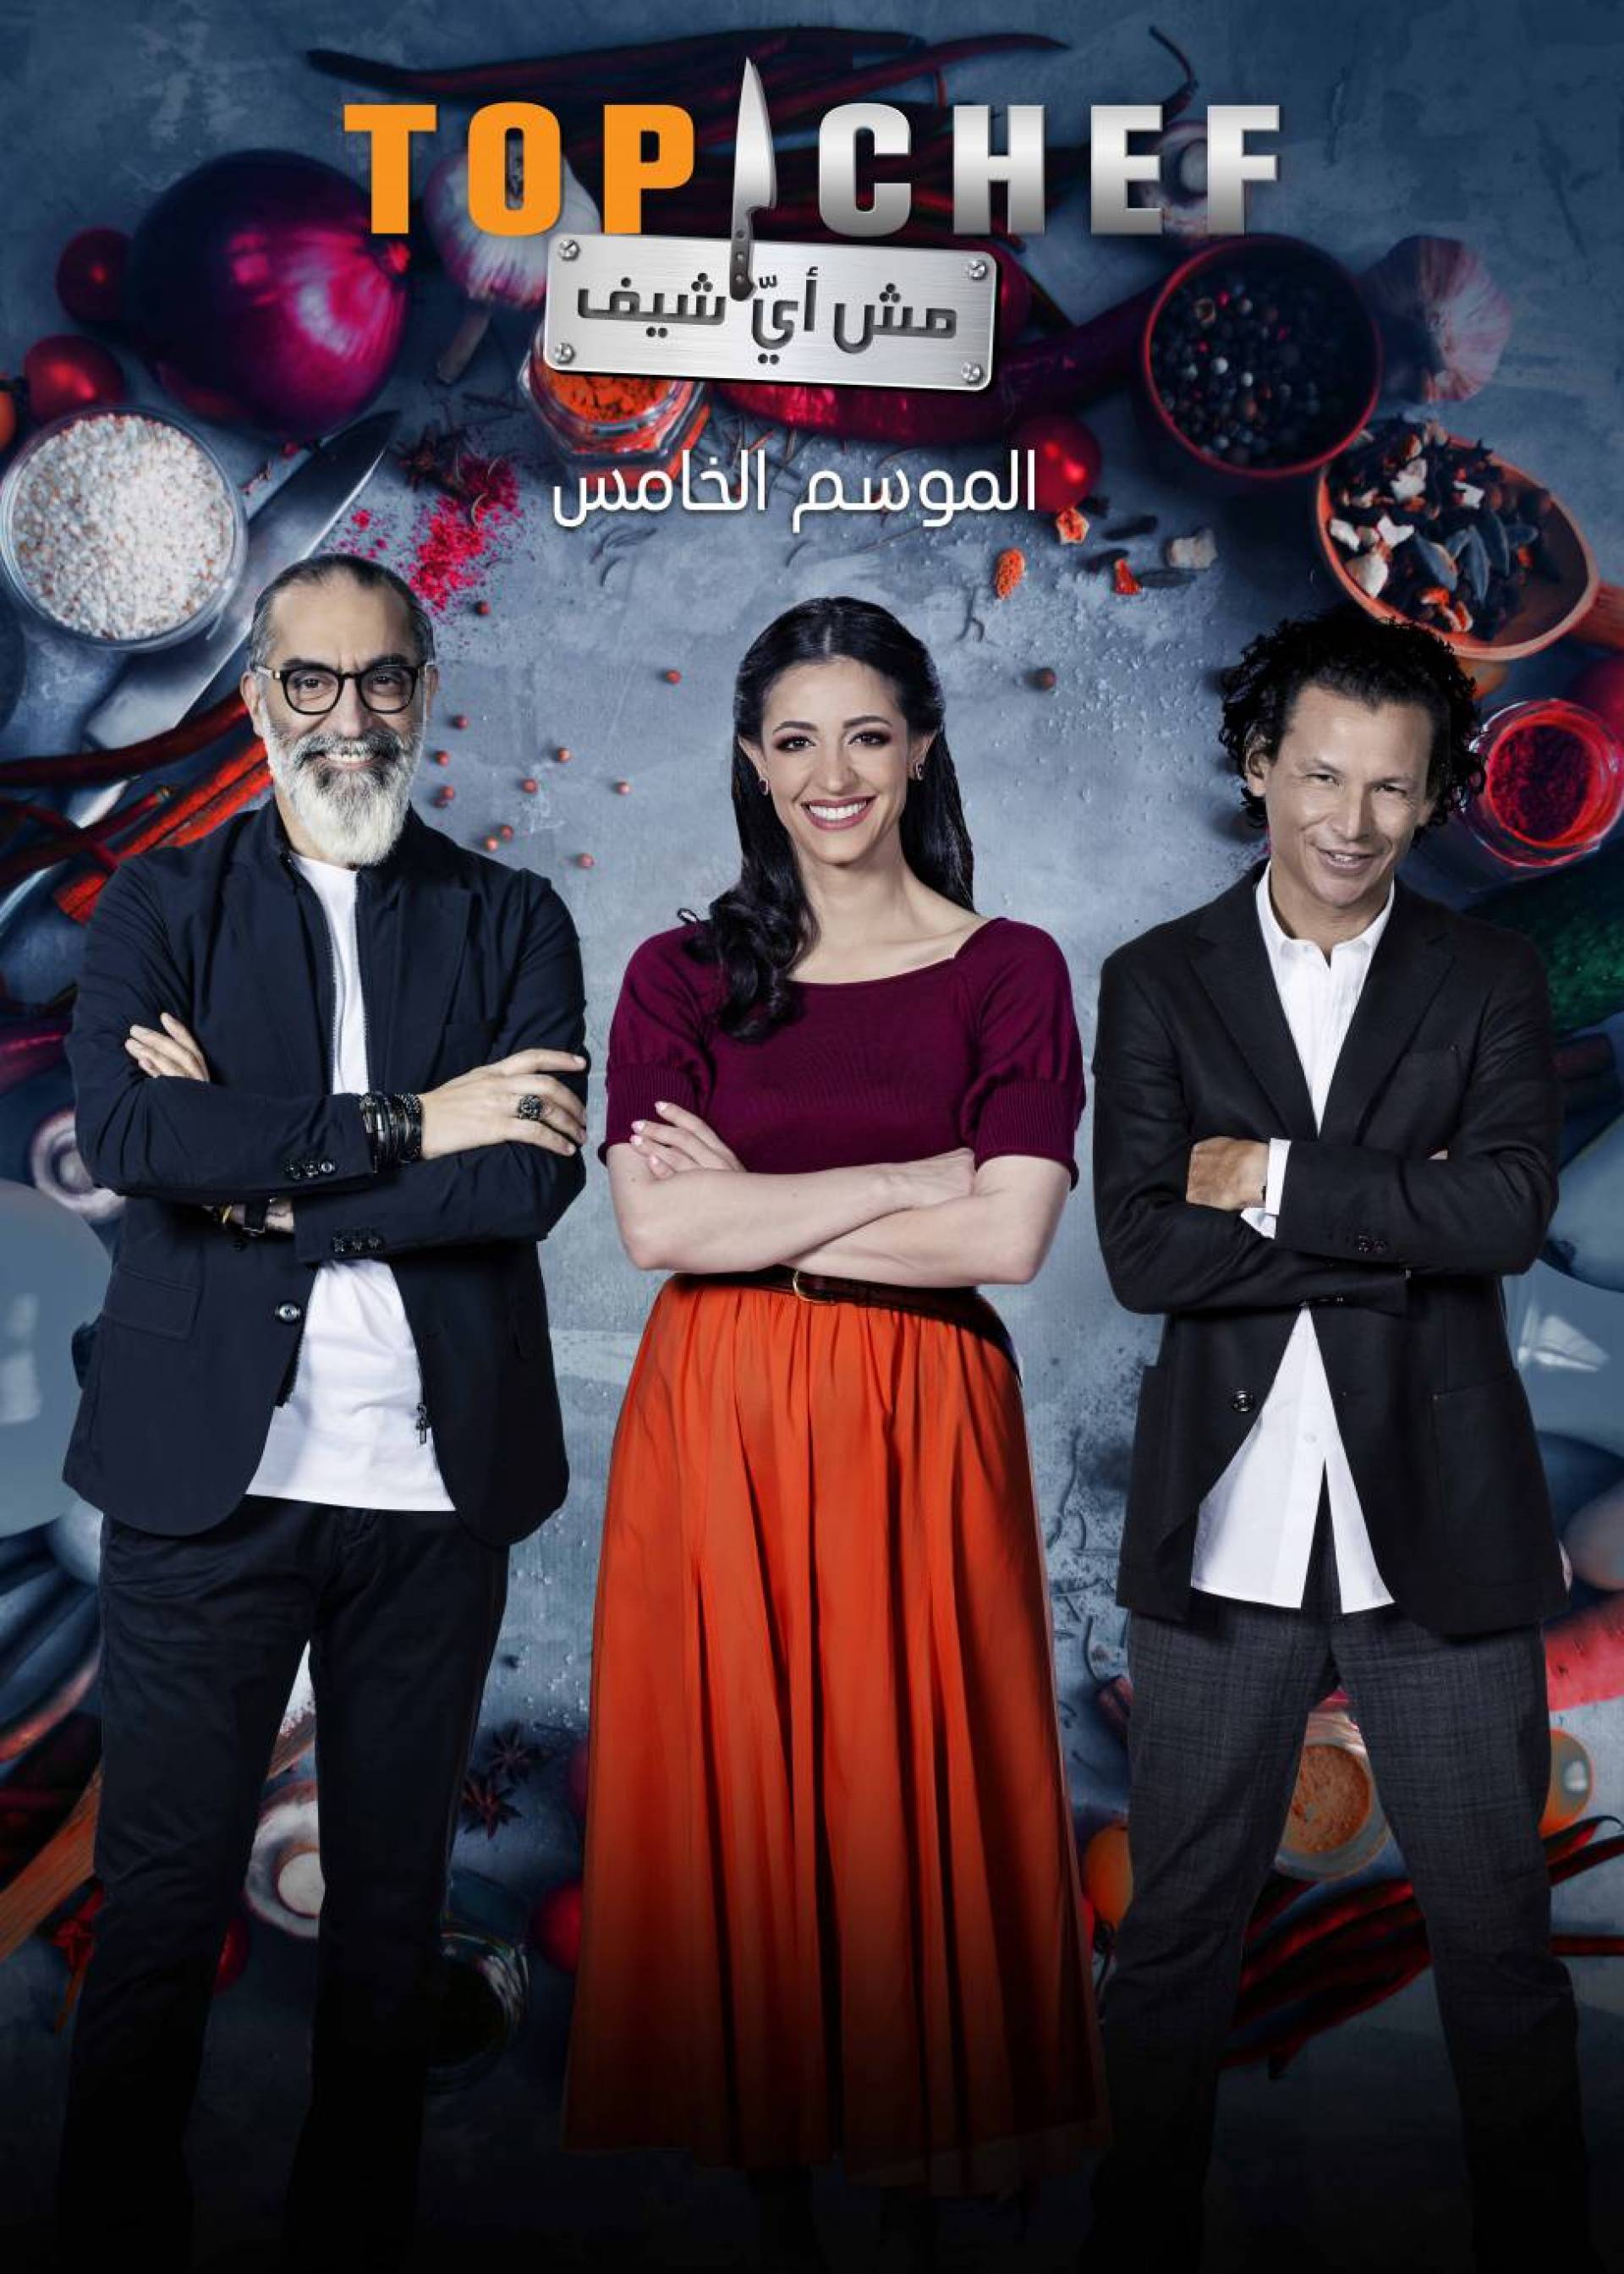 انطلاق الموسم الخامس من "Top Chef" من السعودية ومناطقها التراثية Laha